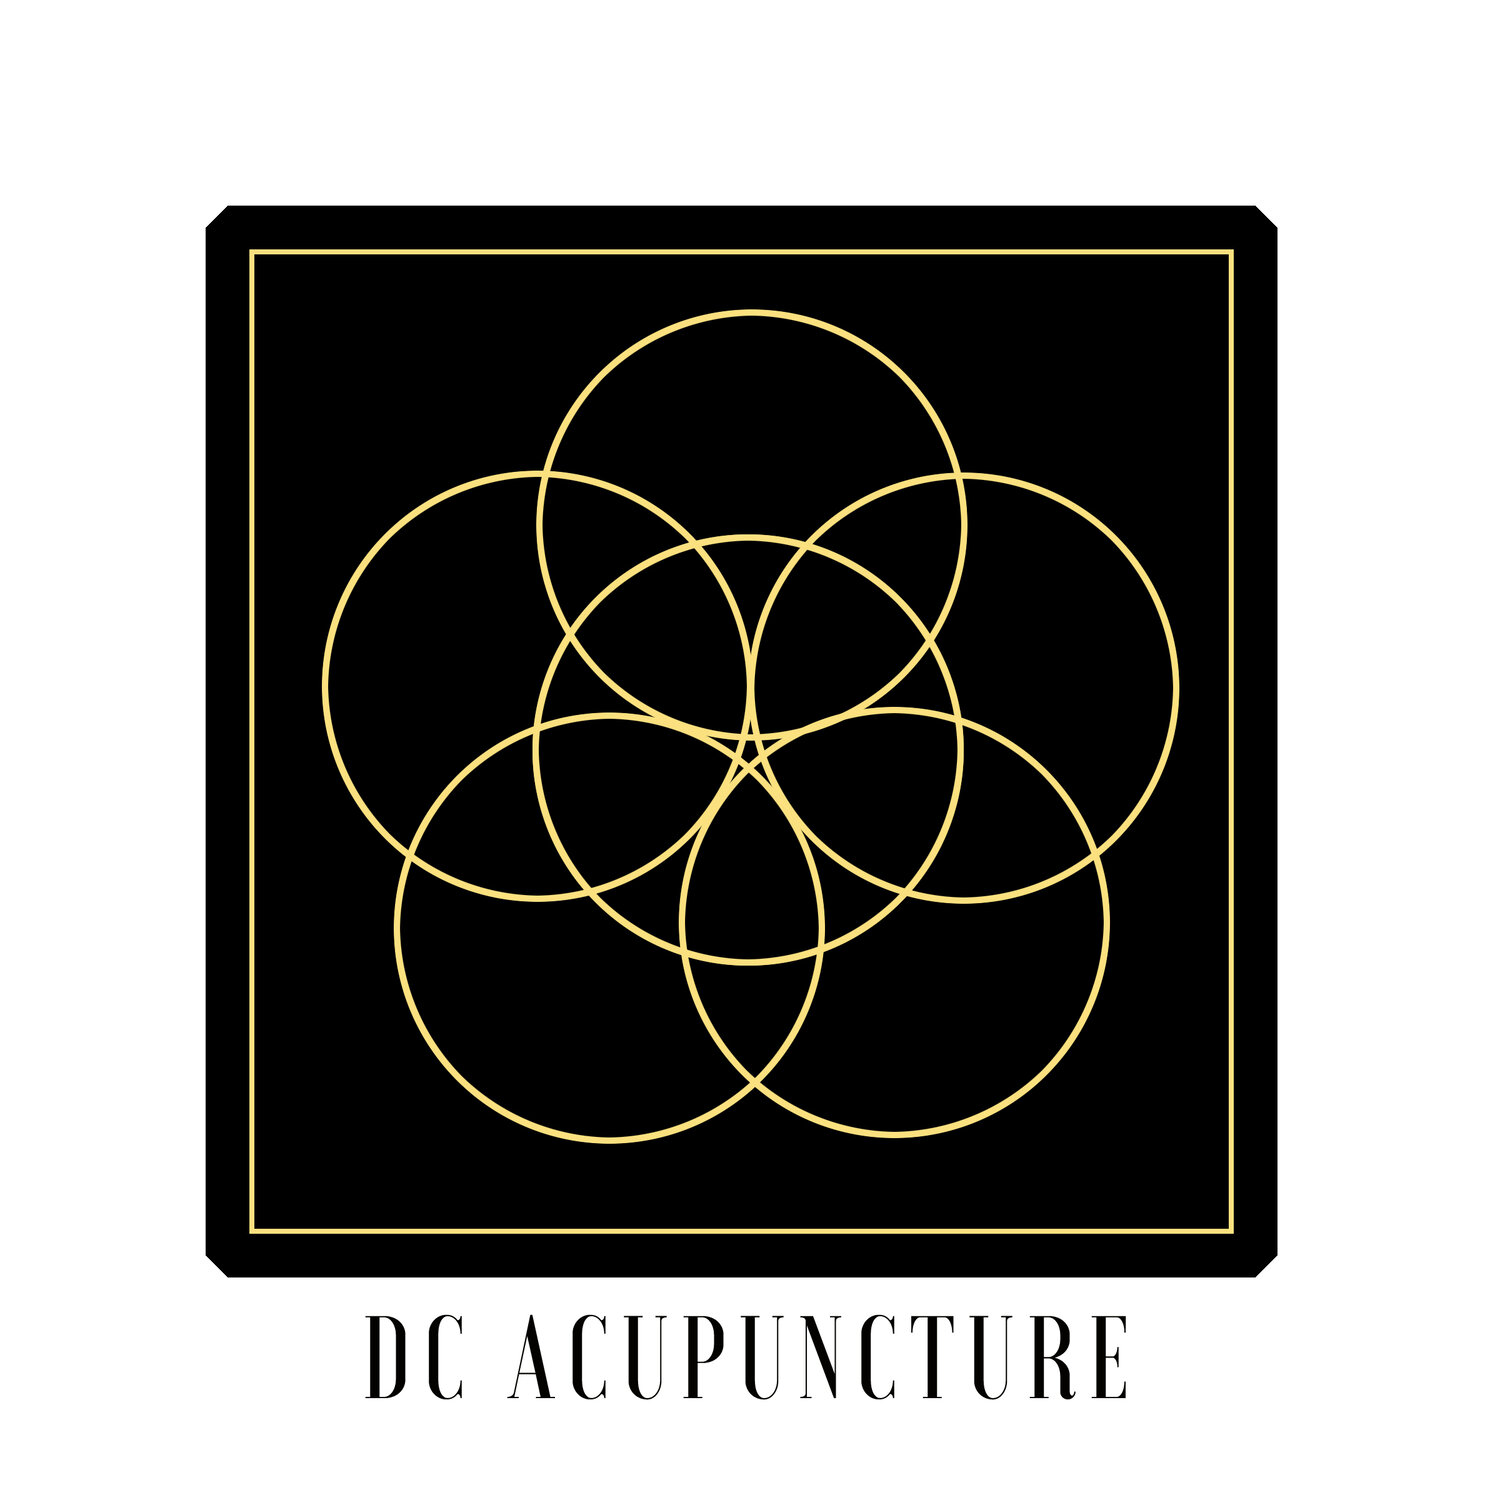 DC Acupuncture